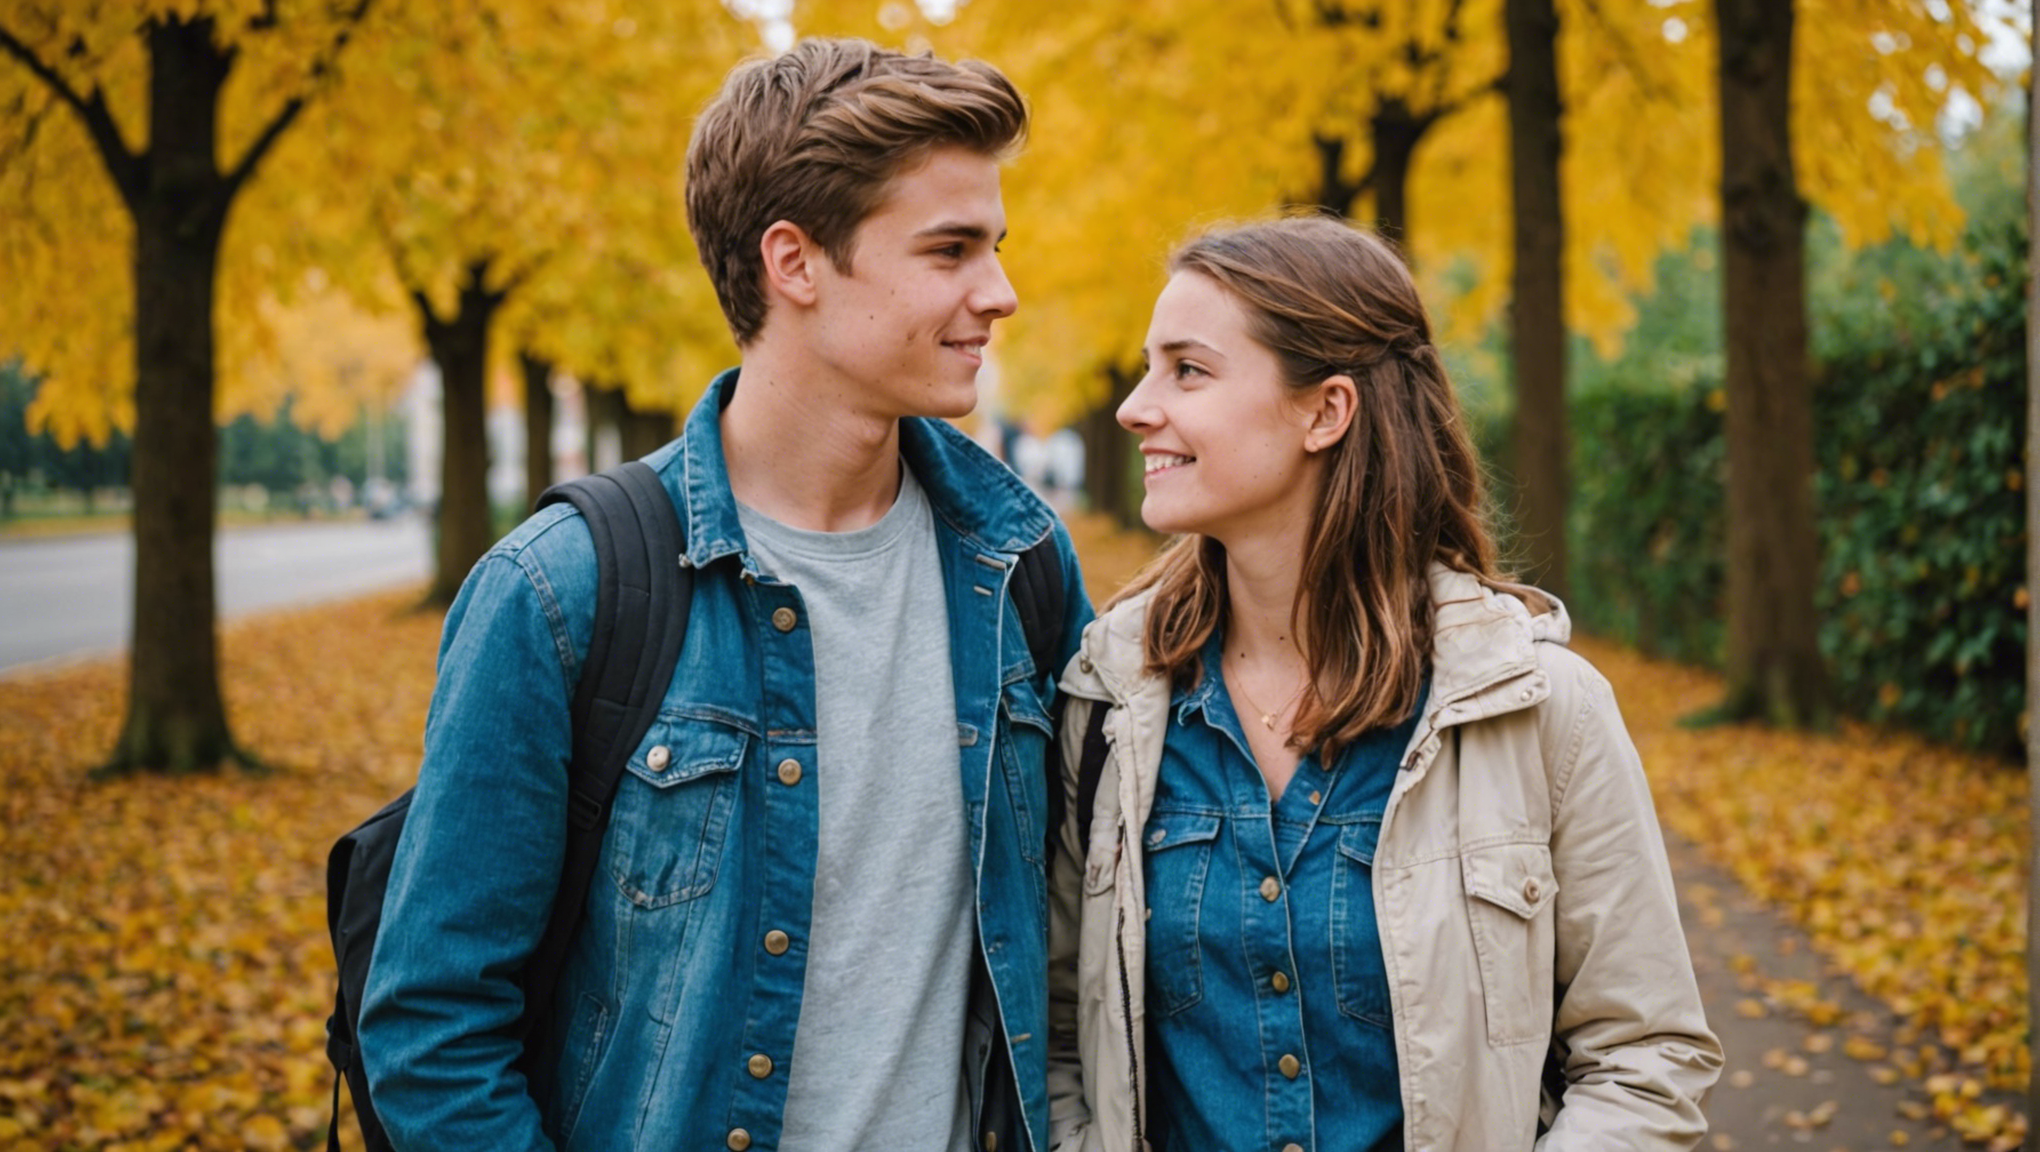 découvrez des conseils pour aider les adolescents à gérer les problèmes de couple, comprendre leurs émotions et trouver des solutions adaptées.